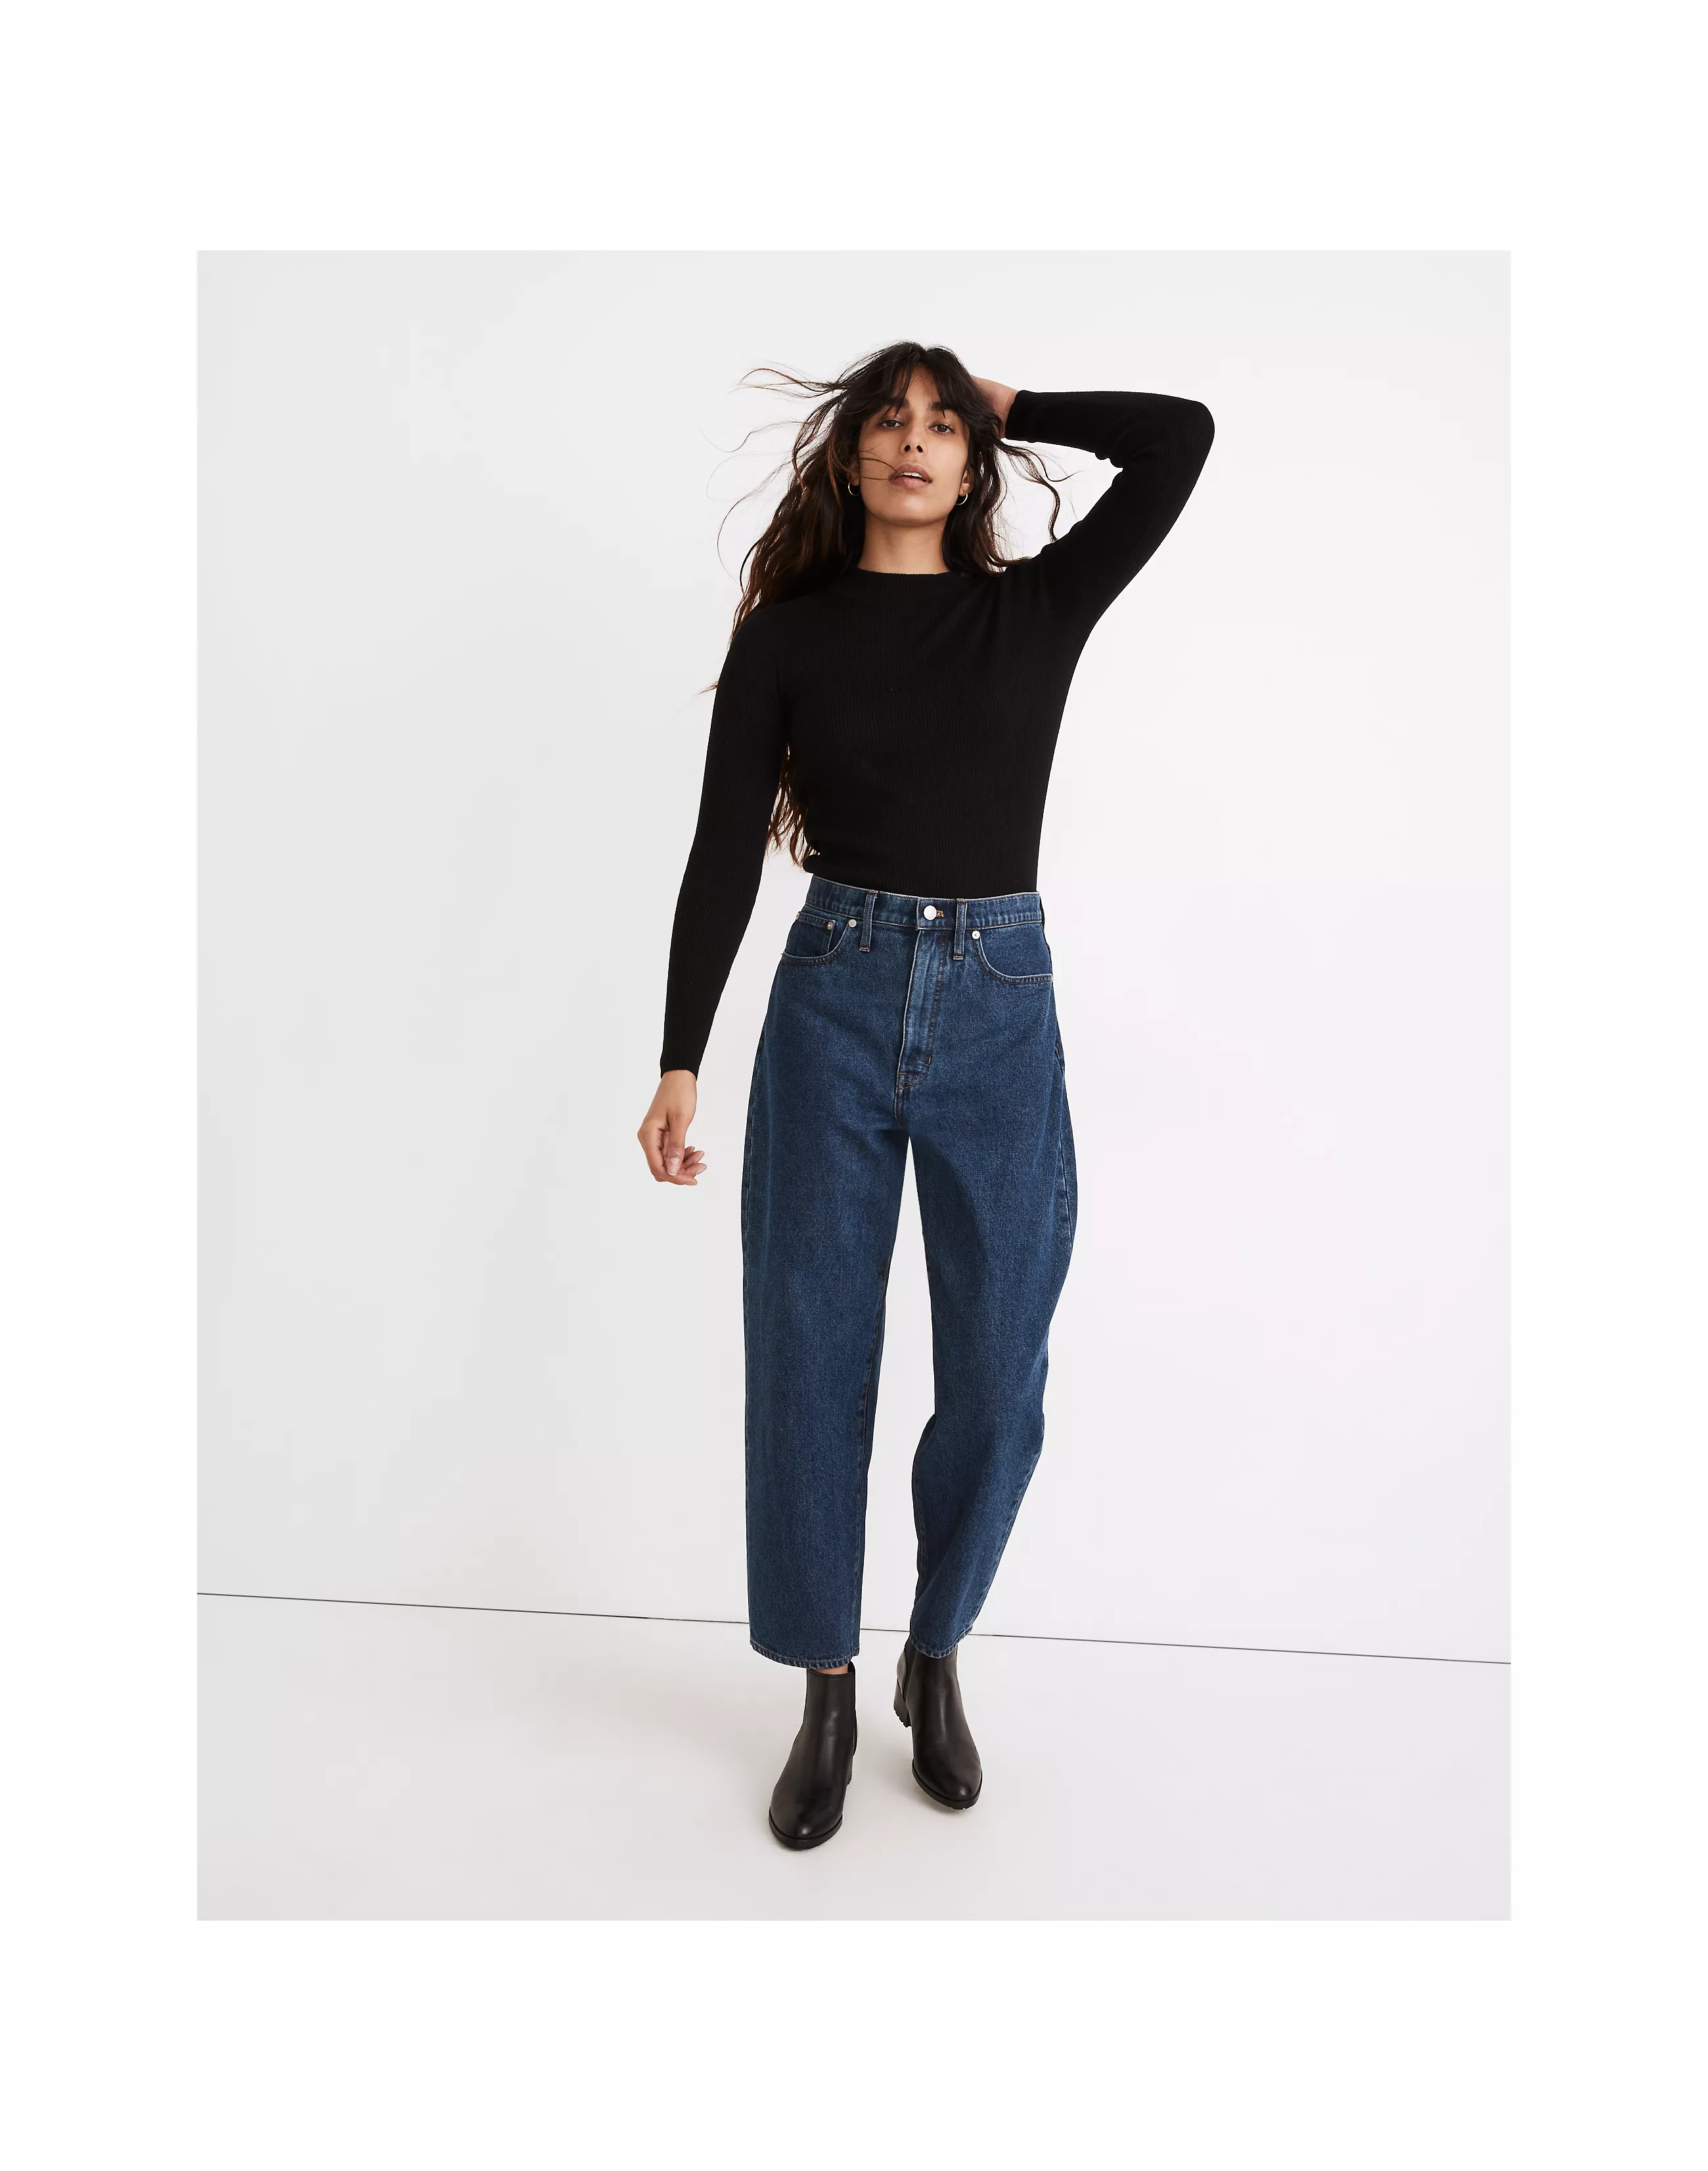 Jeans & Trousers, Zara Front Slit Leggings High Waist